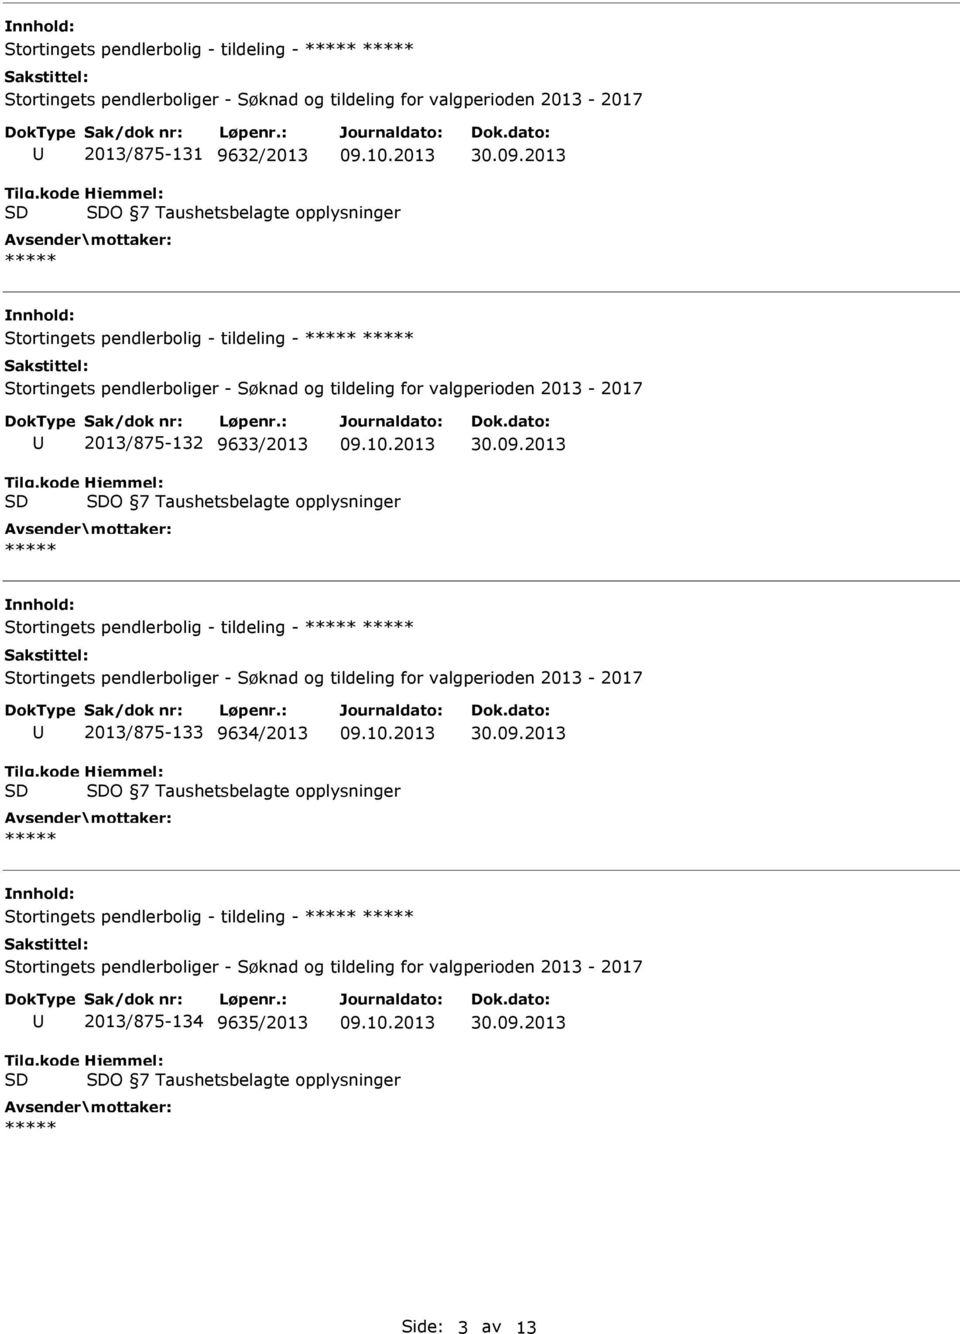 Stortingets pendlerbolig - tildeling - 2013/875-133 9634/2013 O 7 Taushetsbelagte opplysninger